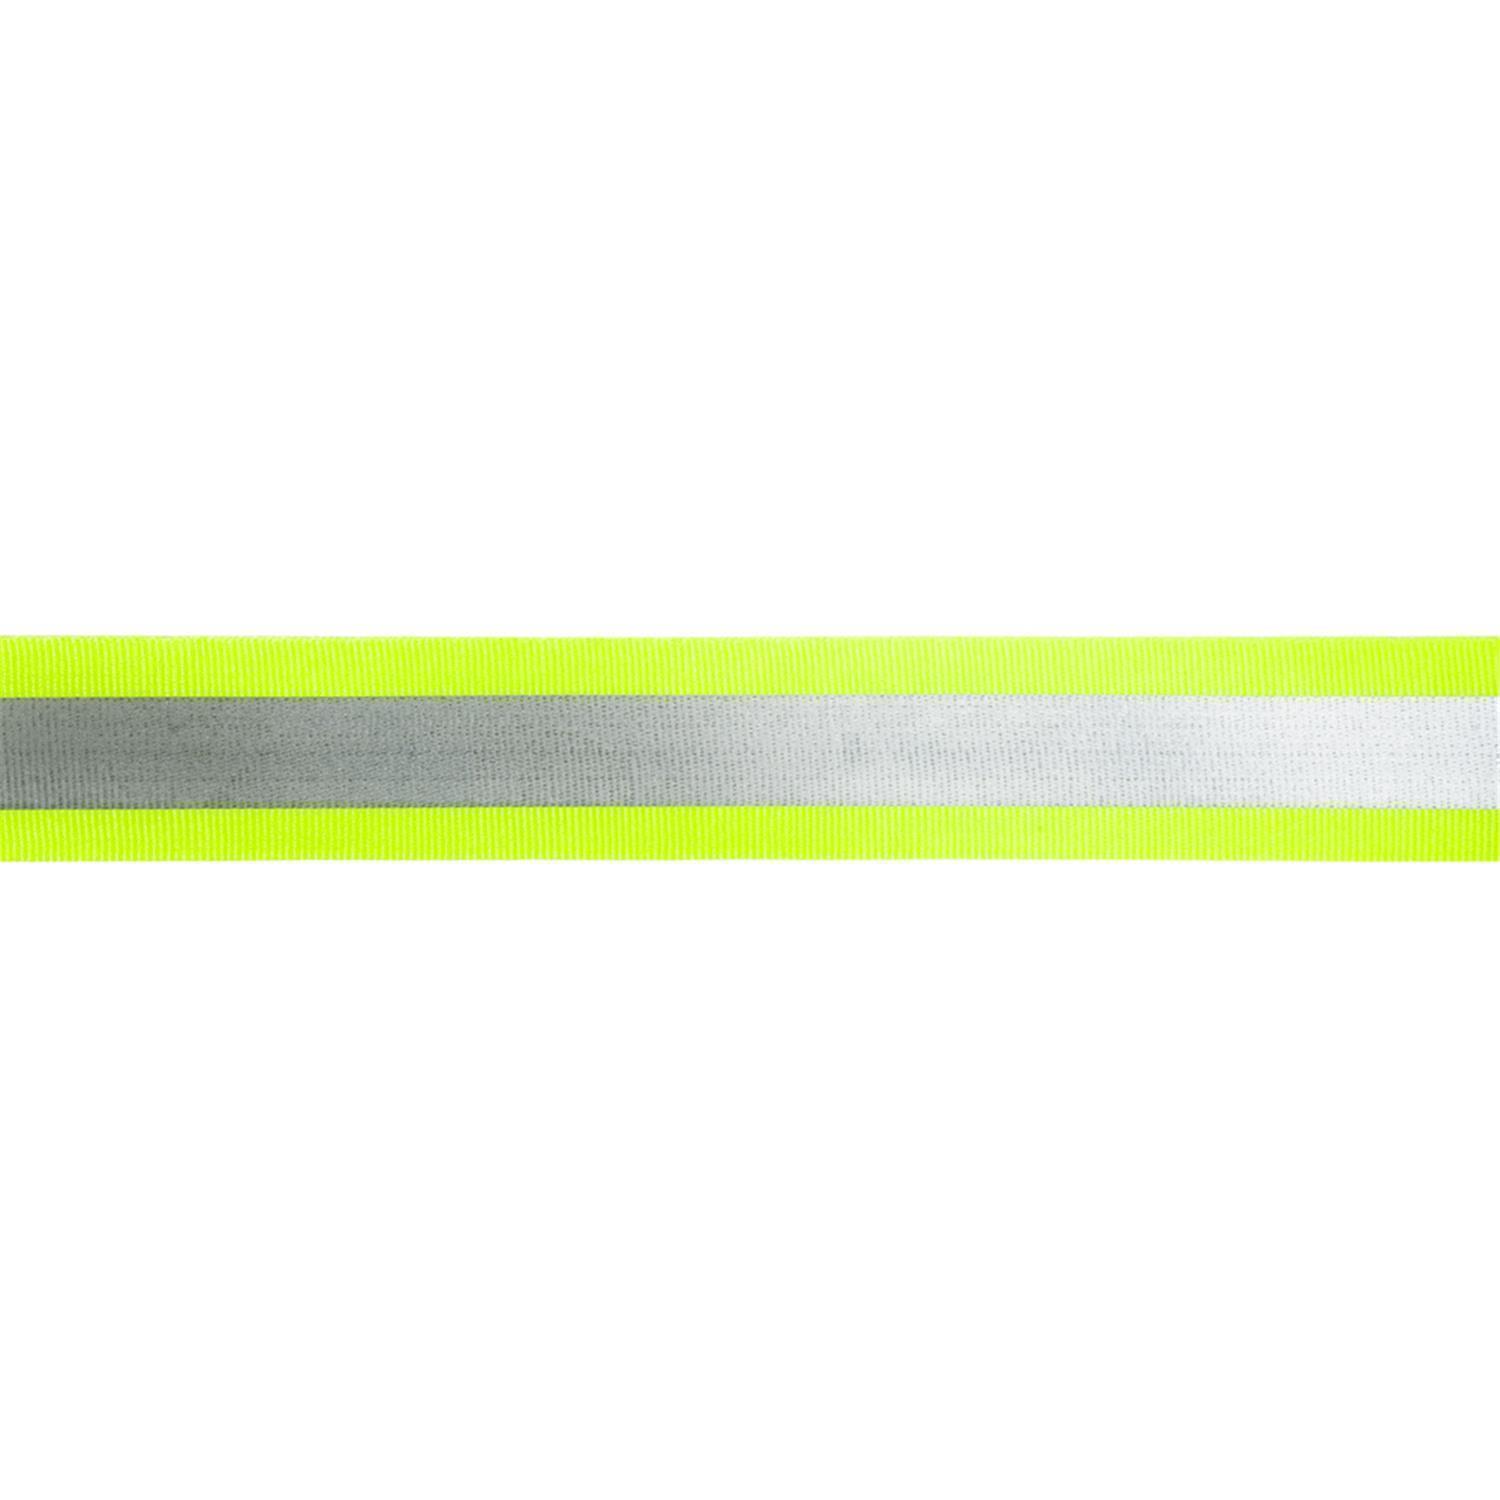 Reflektorband 30mm breit in 3 Farben gelb-silber 05 Meter